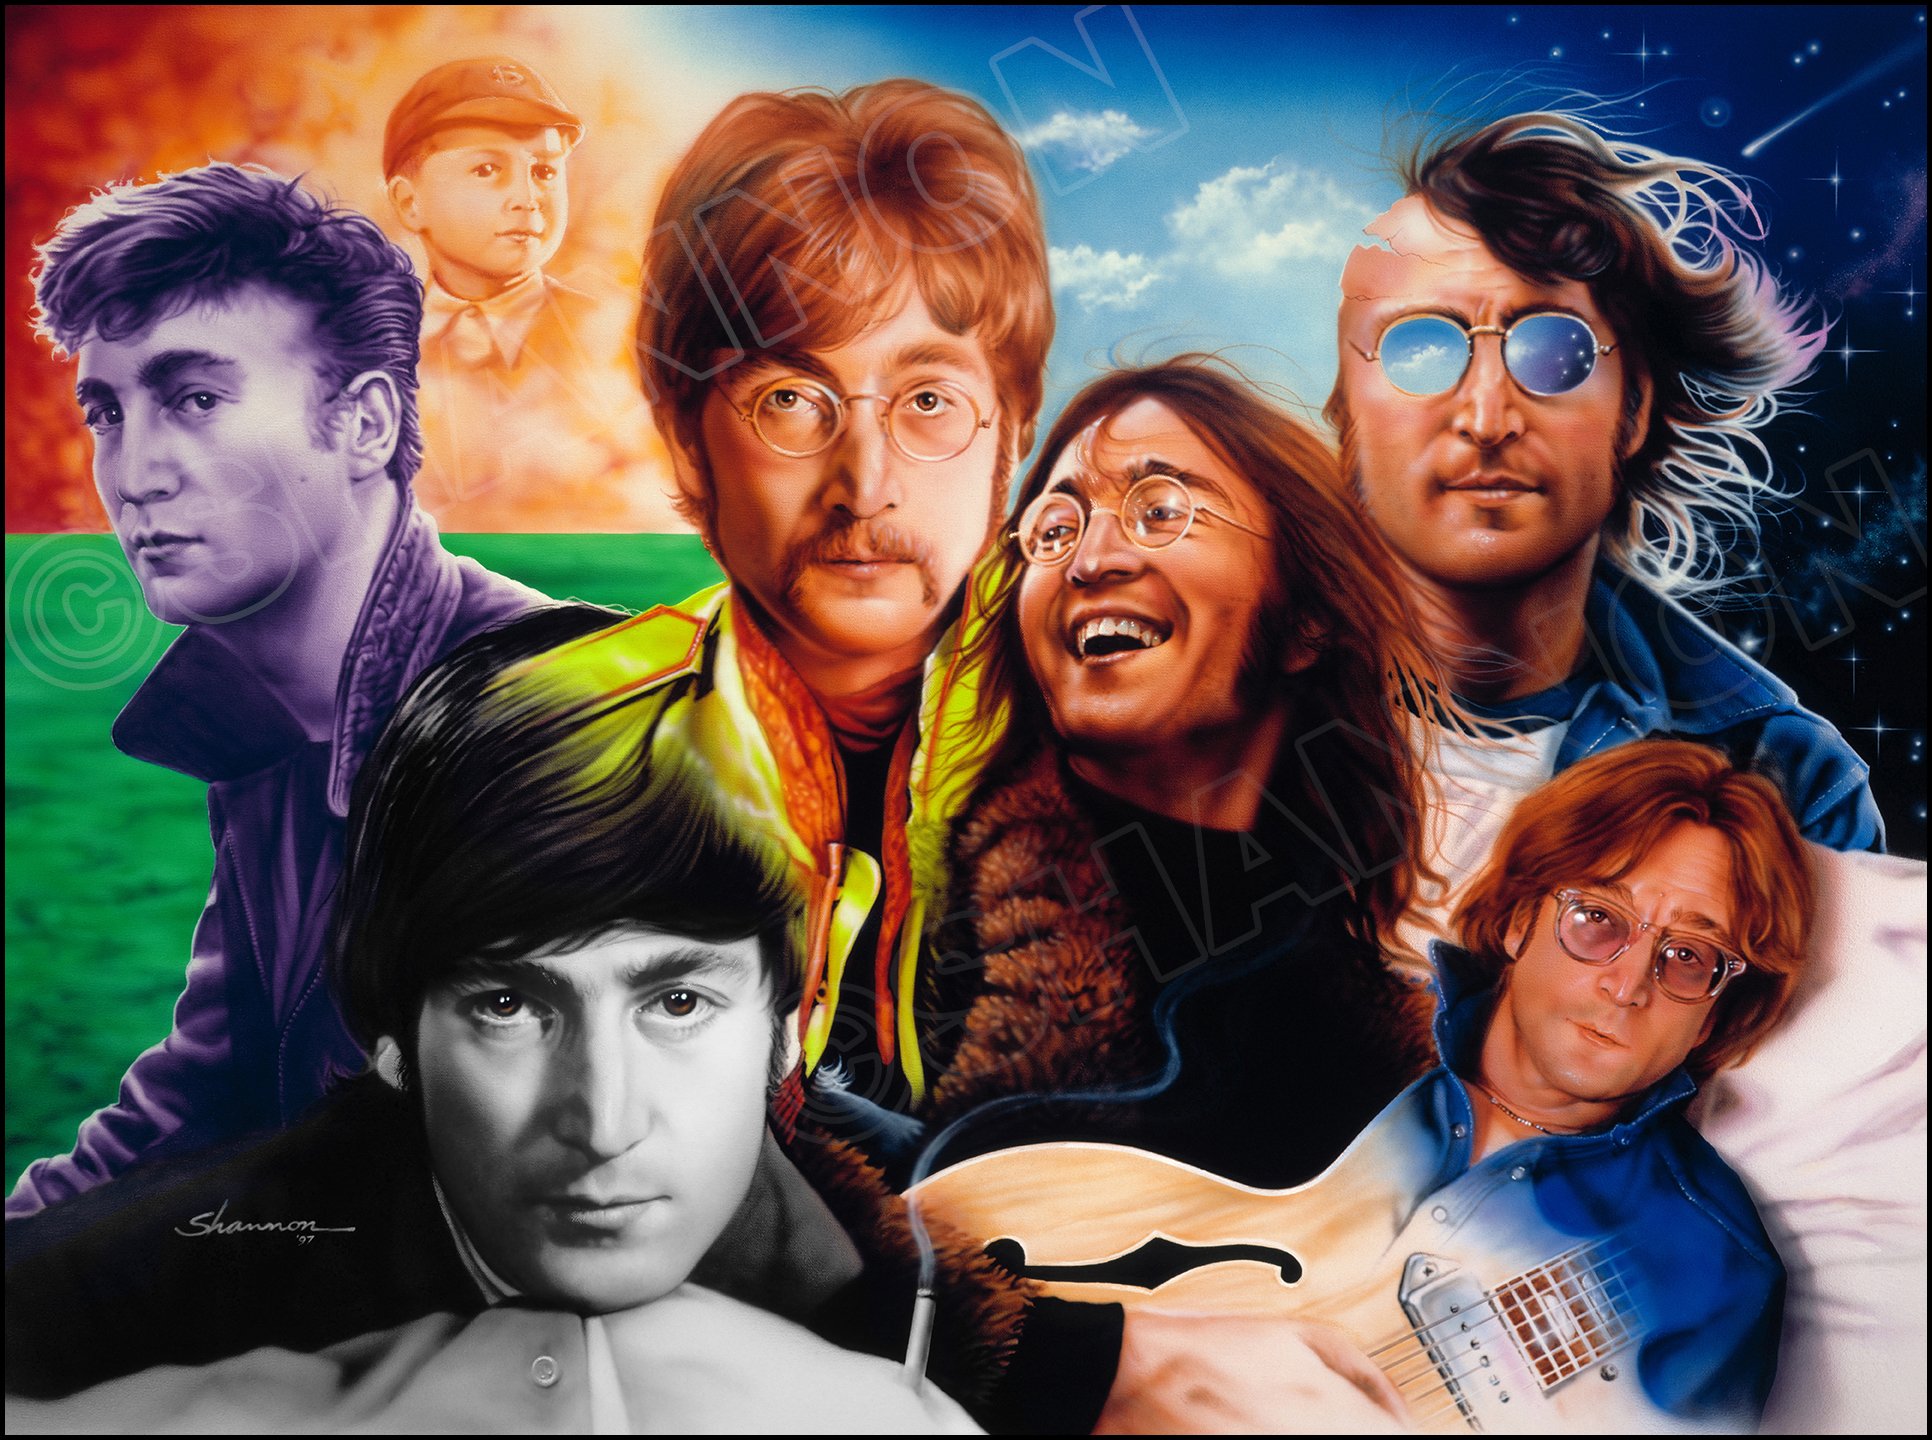 Imagine beatles. John Lennon. Битлз арт. John Lennon collage. Коллаж с Леннон.